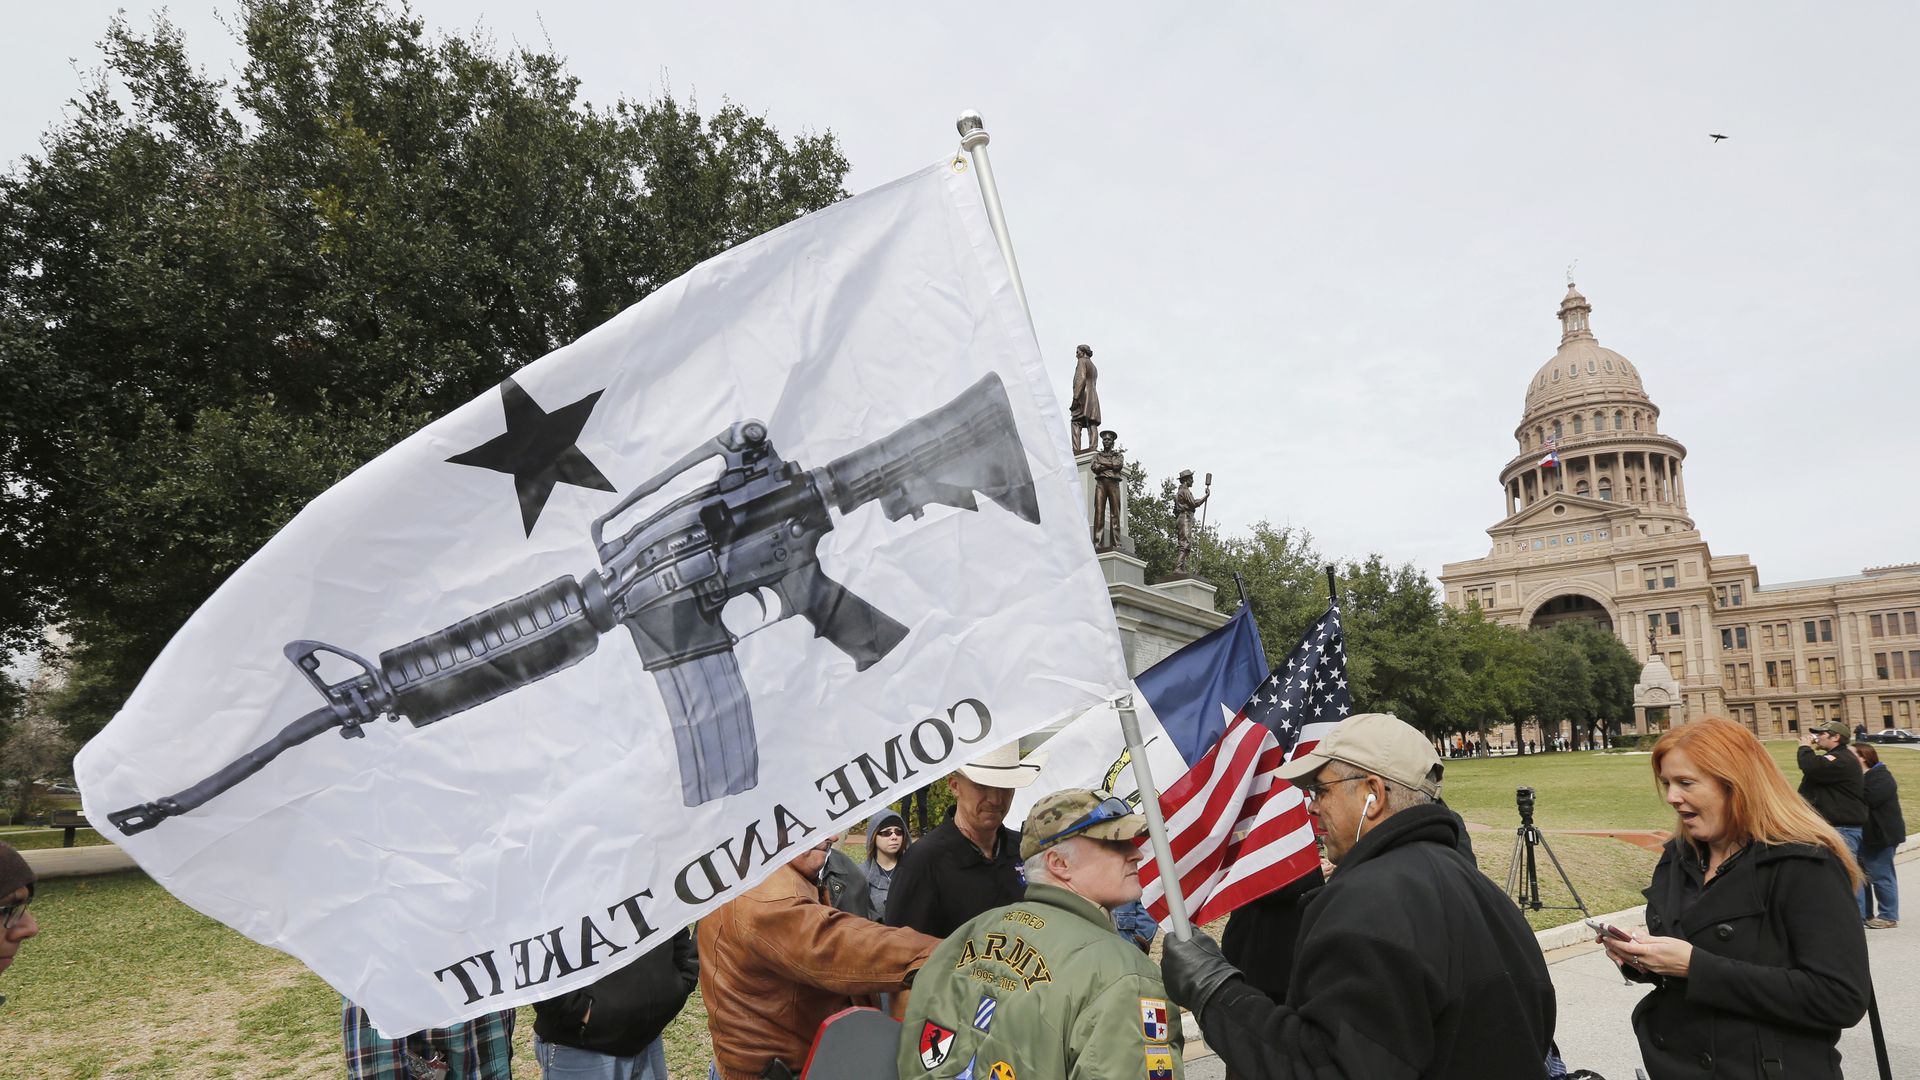 A gun rally at the Texas Capitol